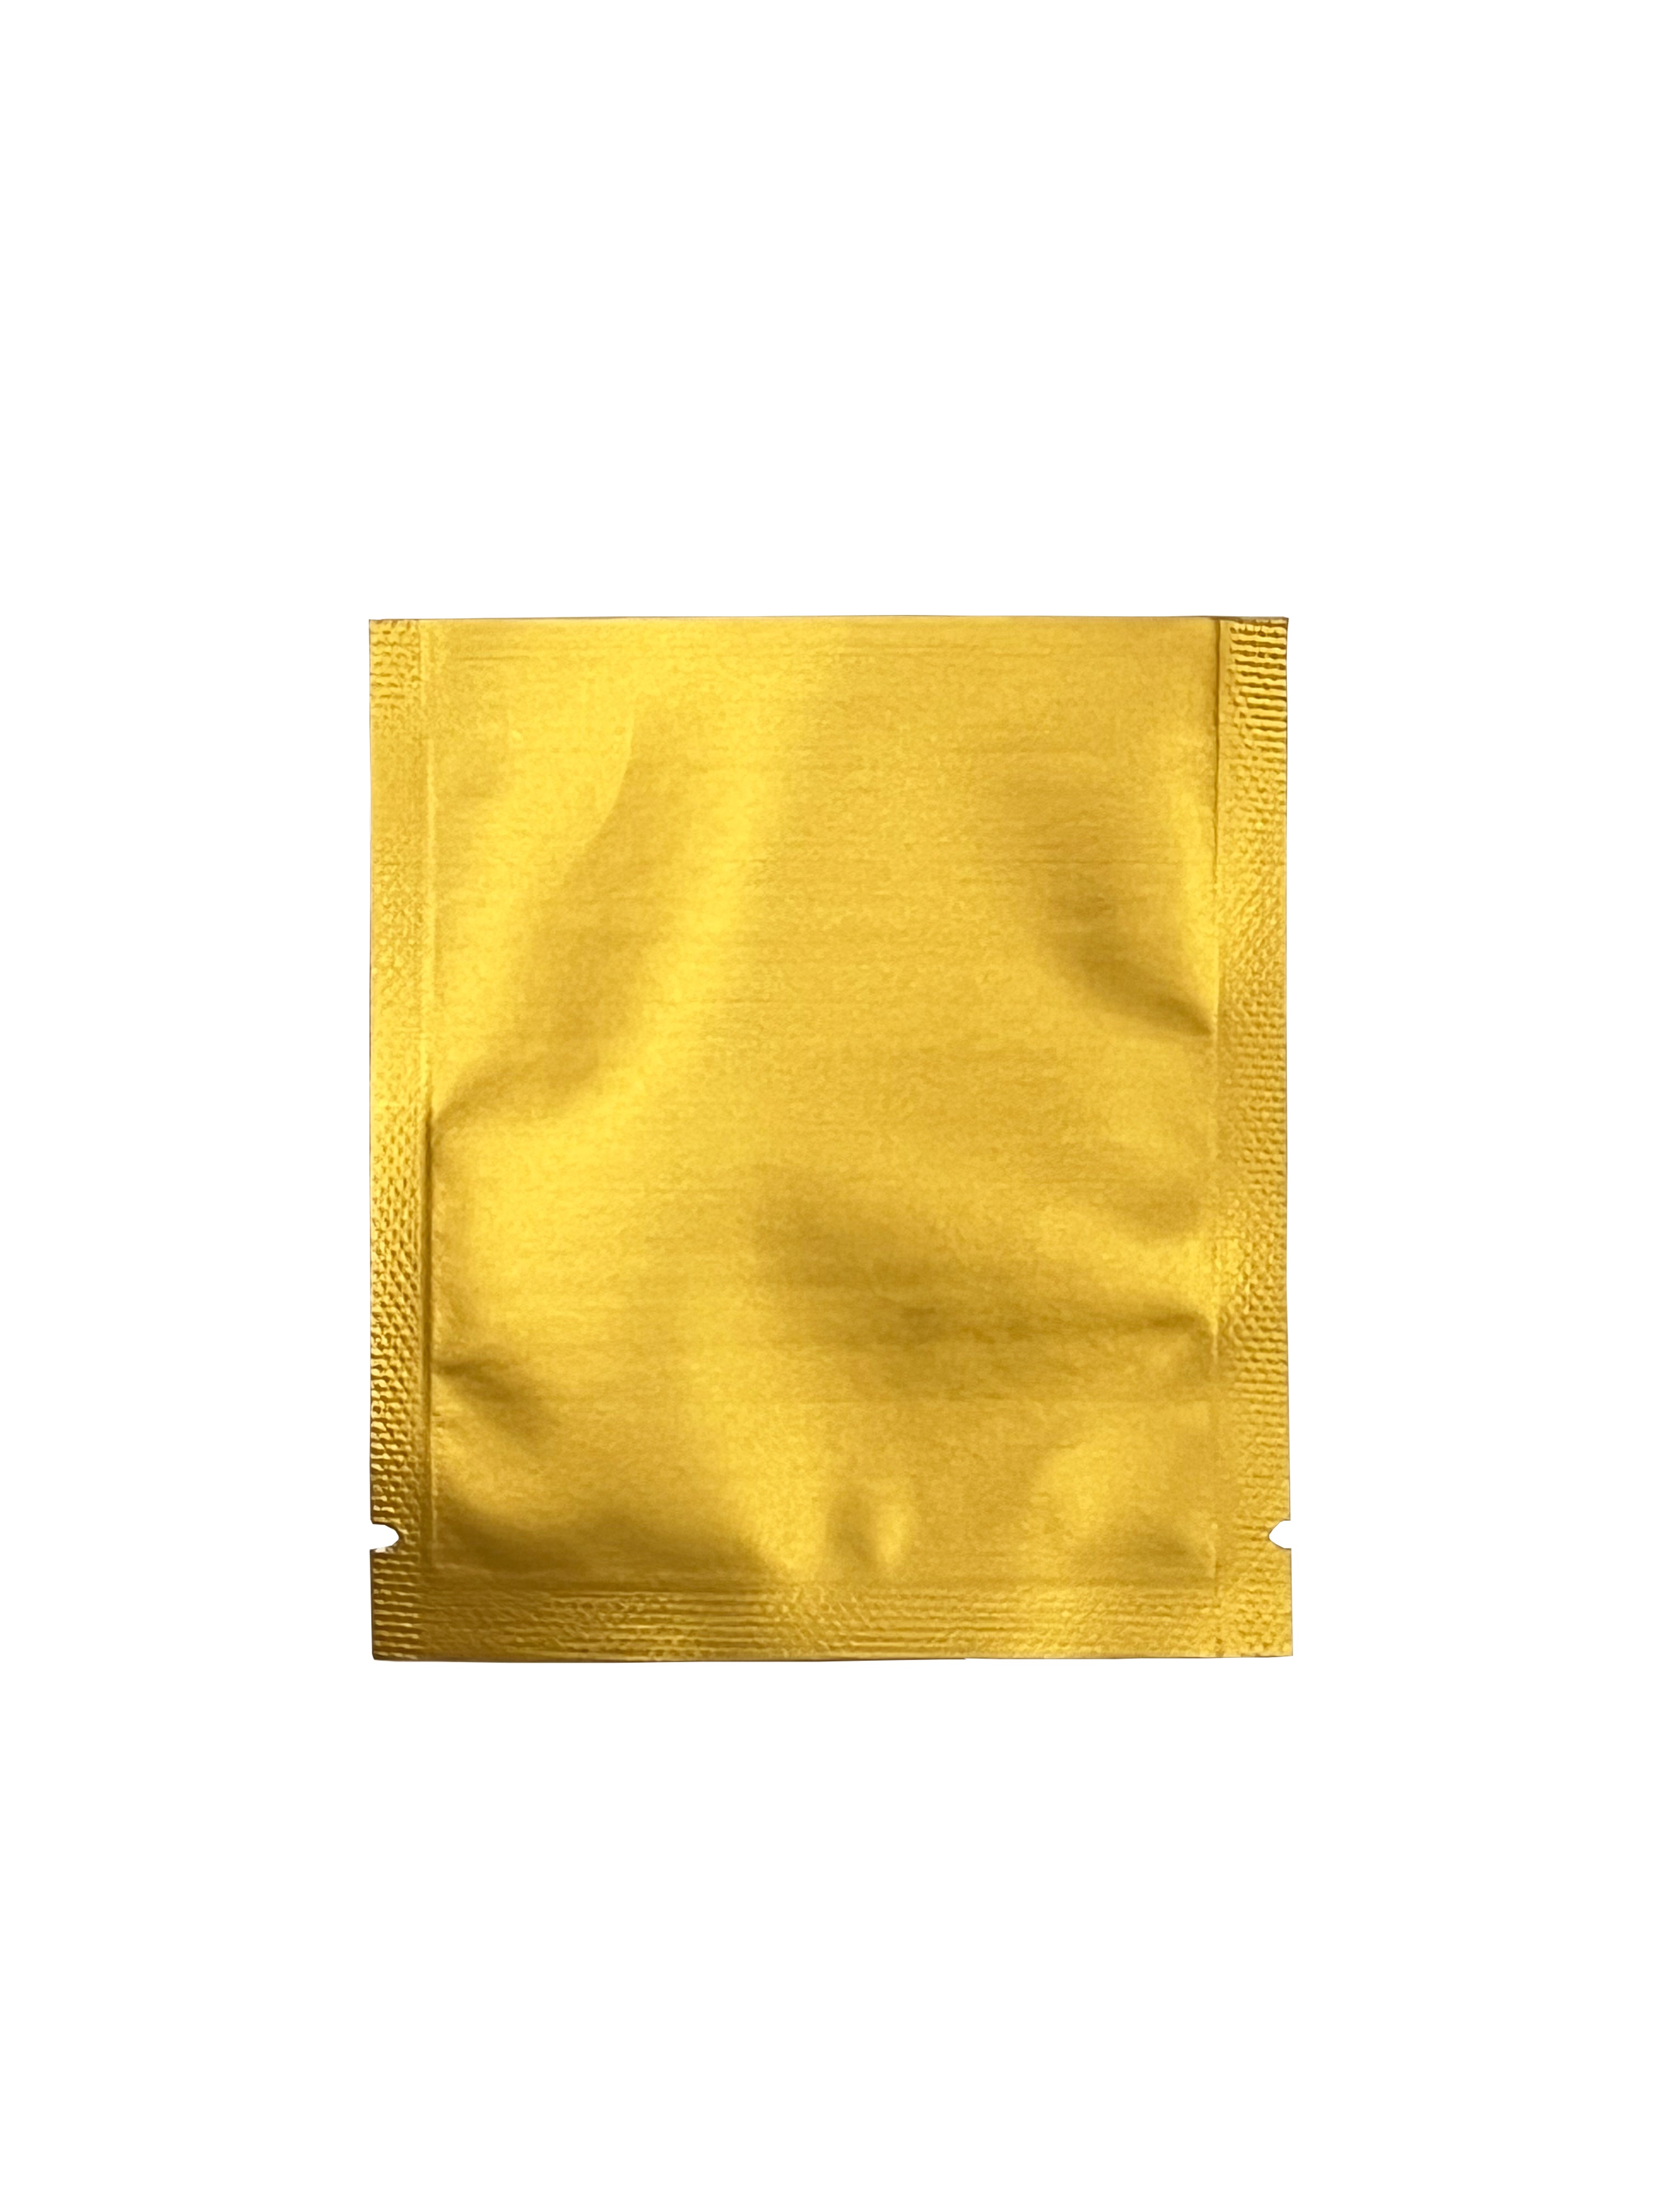 Plain Outer Envelop For Tea Bag